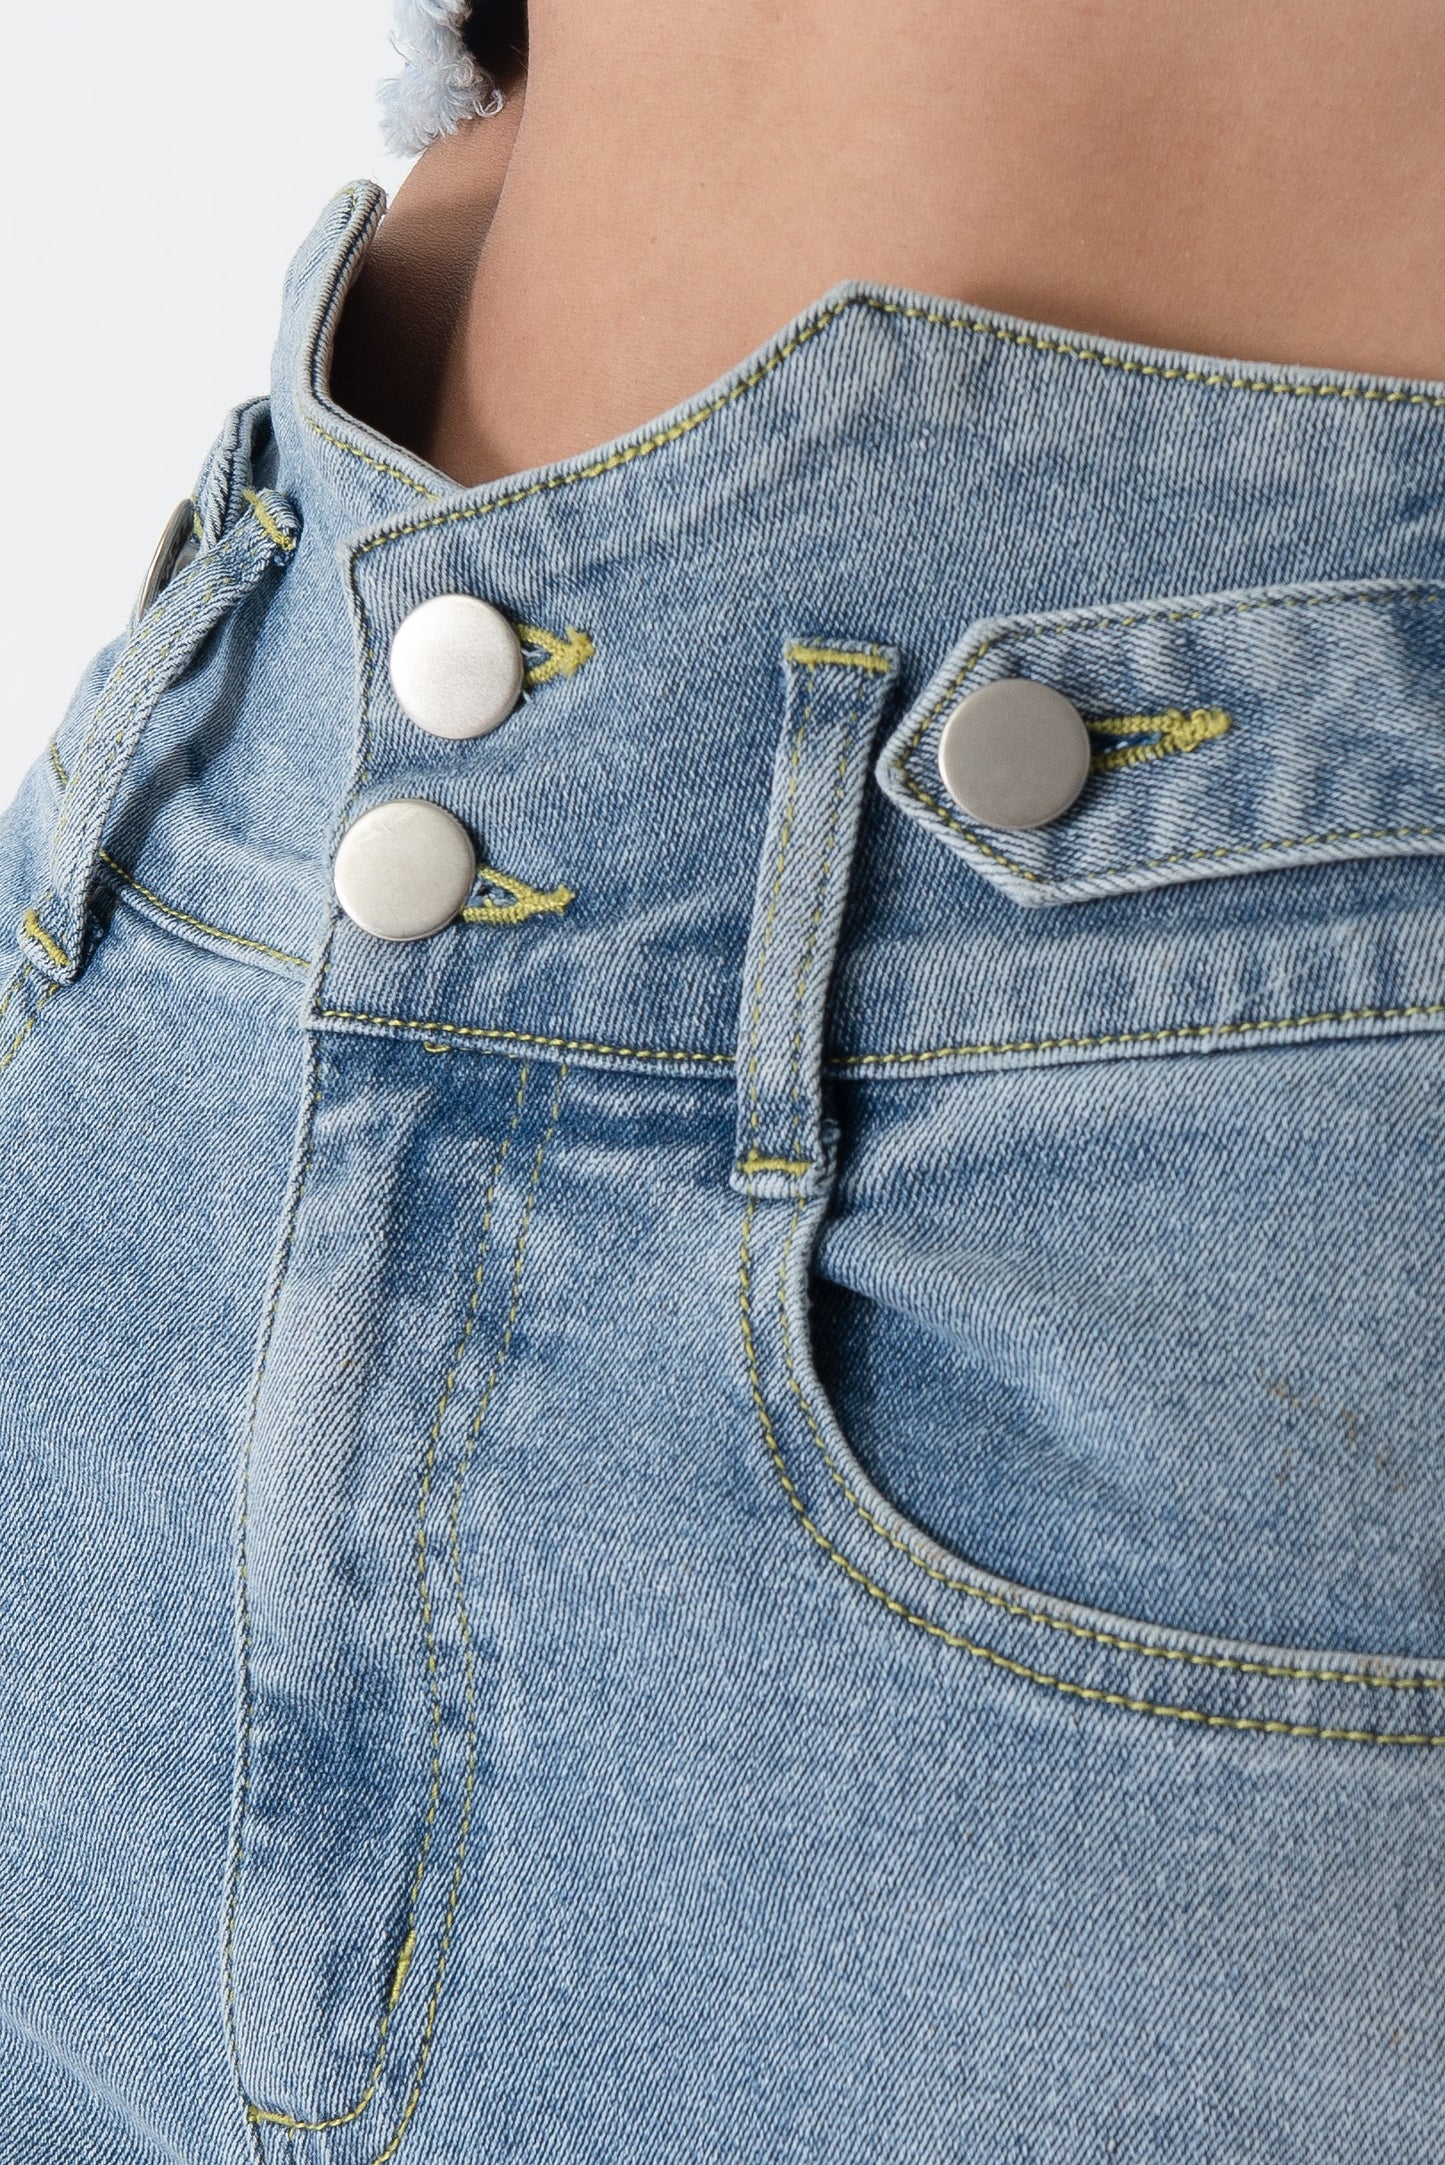 Perfect High Waist Denim Medium Stretch Jeans With Vintage Button Design